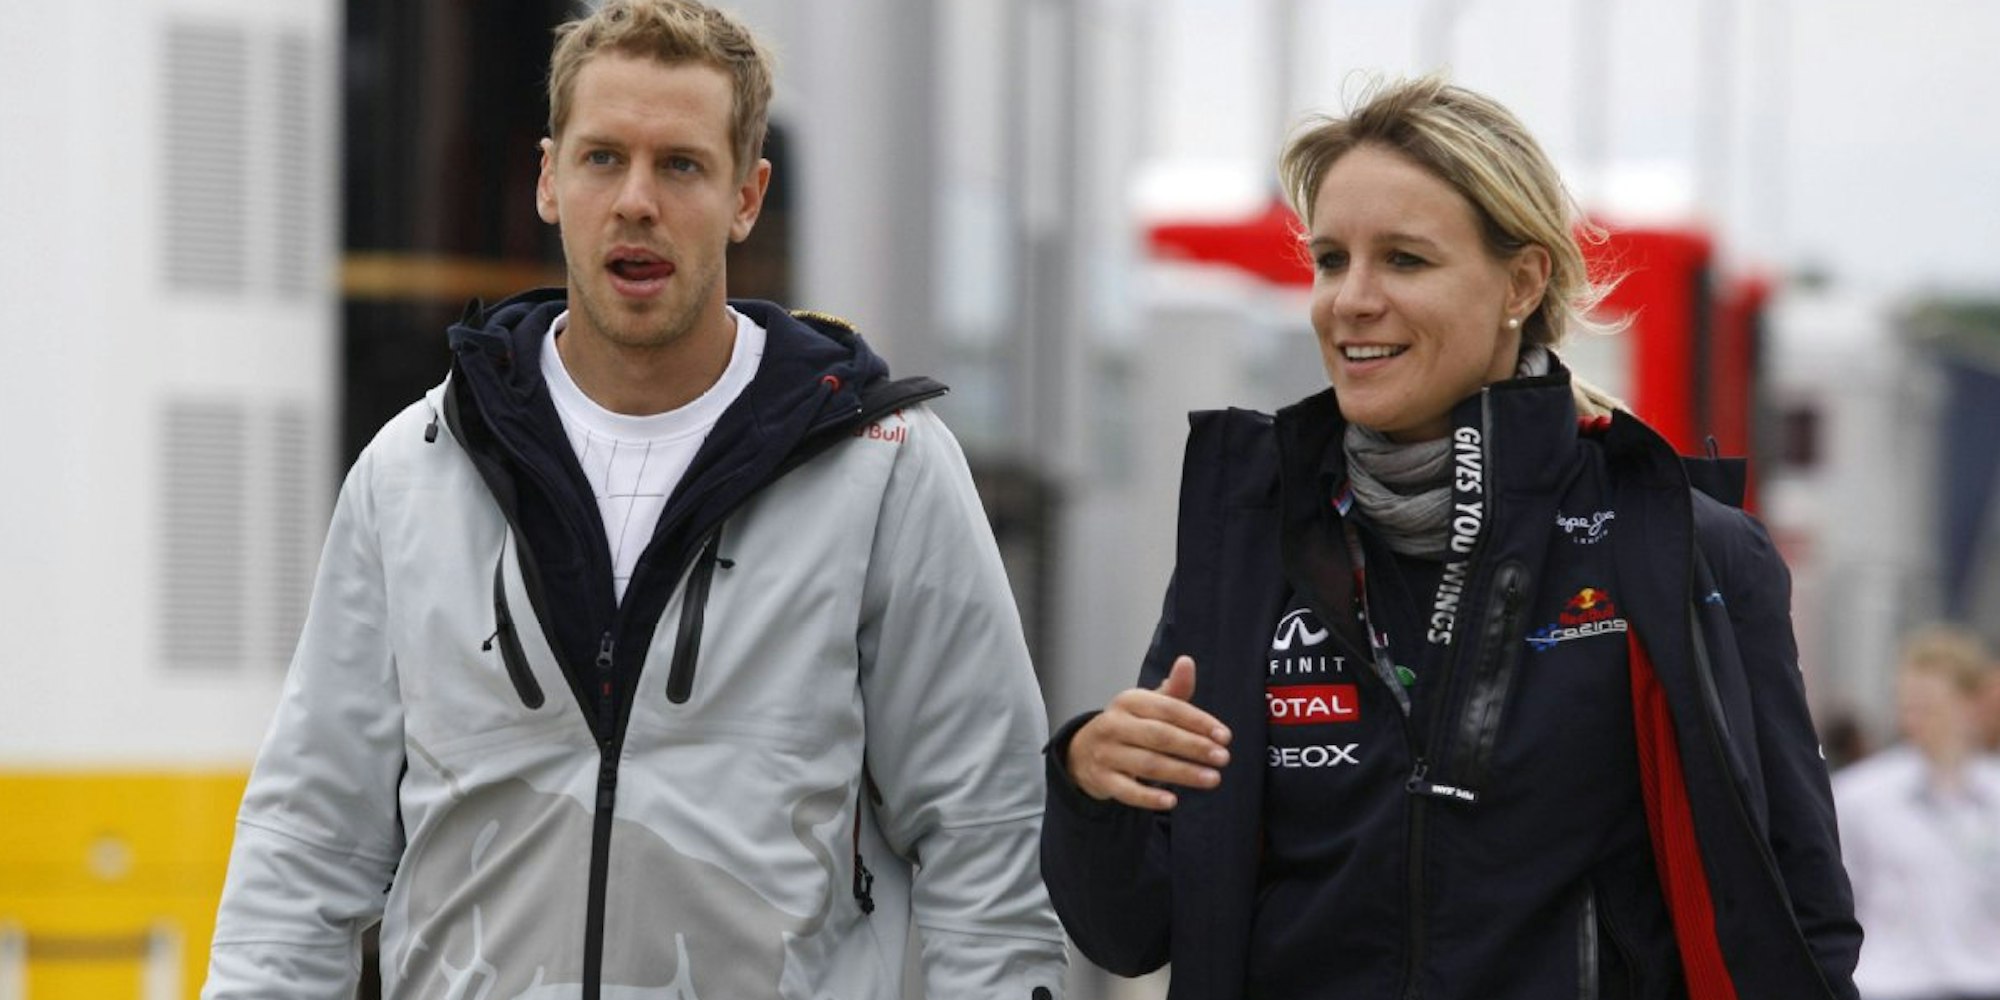 Immer an der Rennstrecke an der Seite von Sebastian Vettel: Britta Röske studierte BWL, bevor sie in der Formel 1 landete.